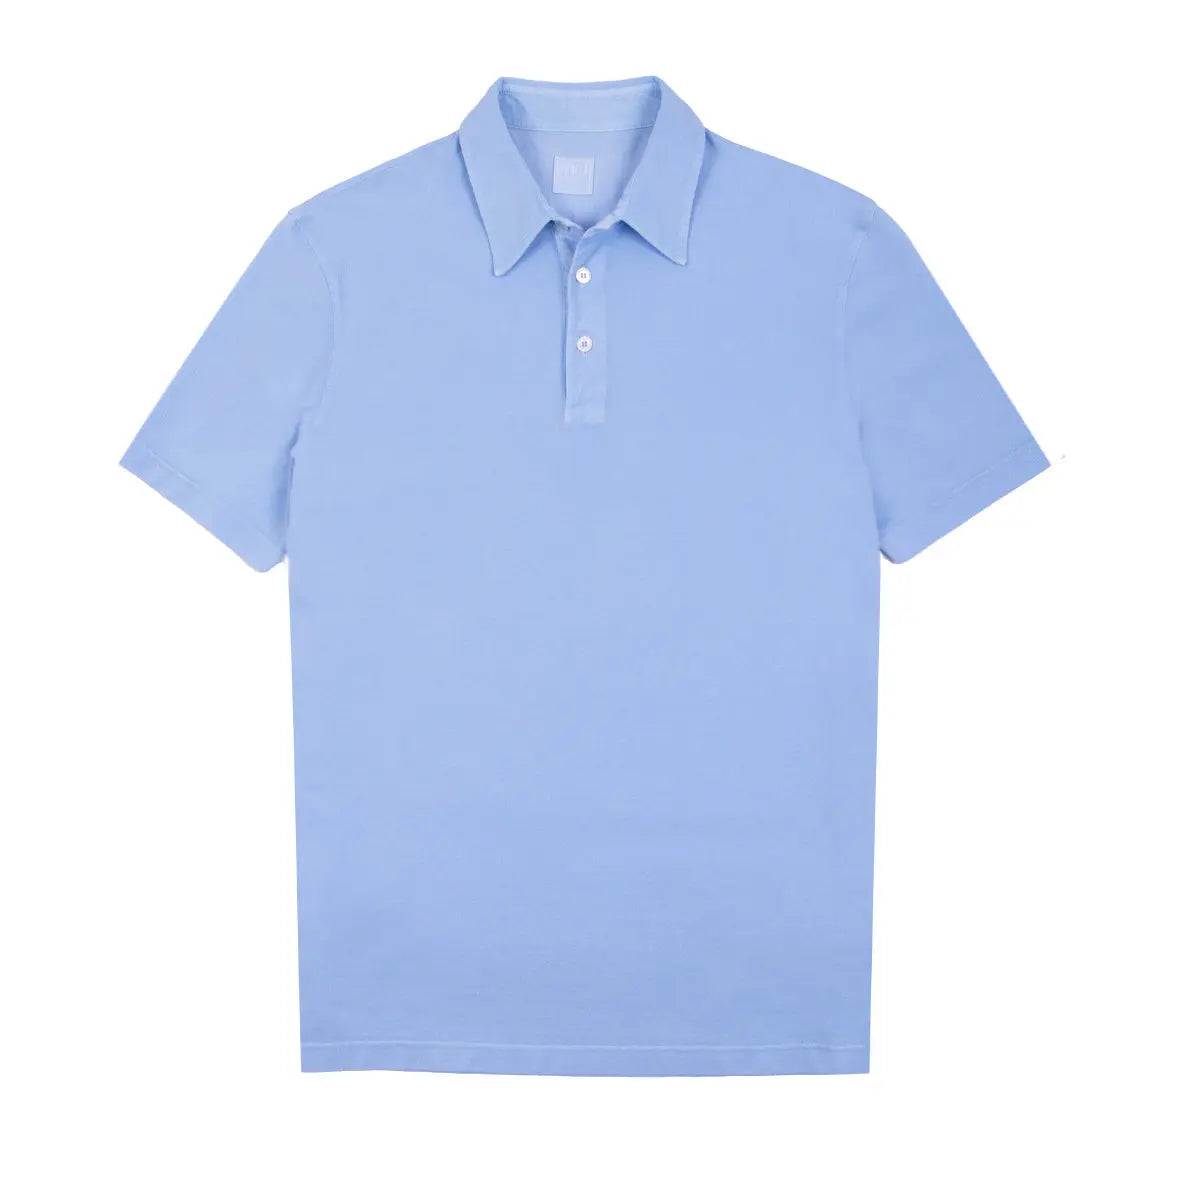 Cotton Piqué Polo Shirt Light Blue S/S POLOS FEDELI   